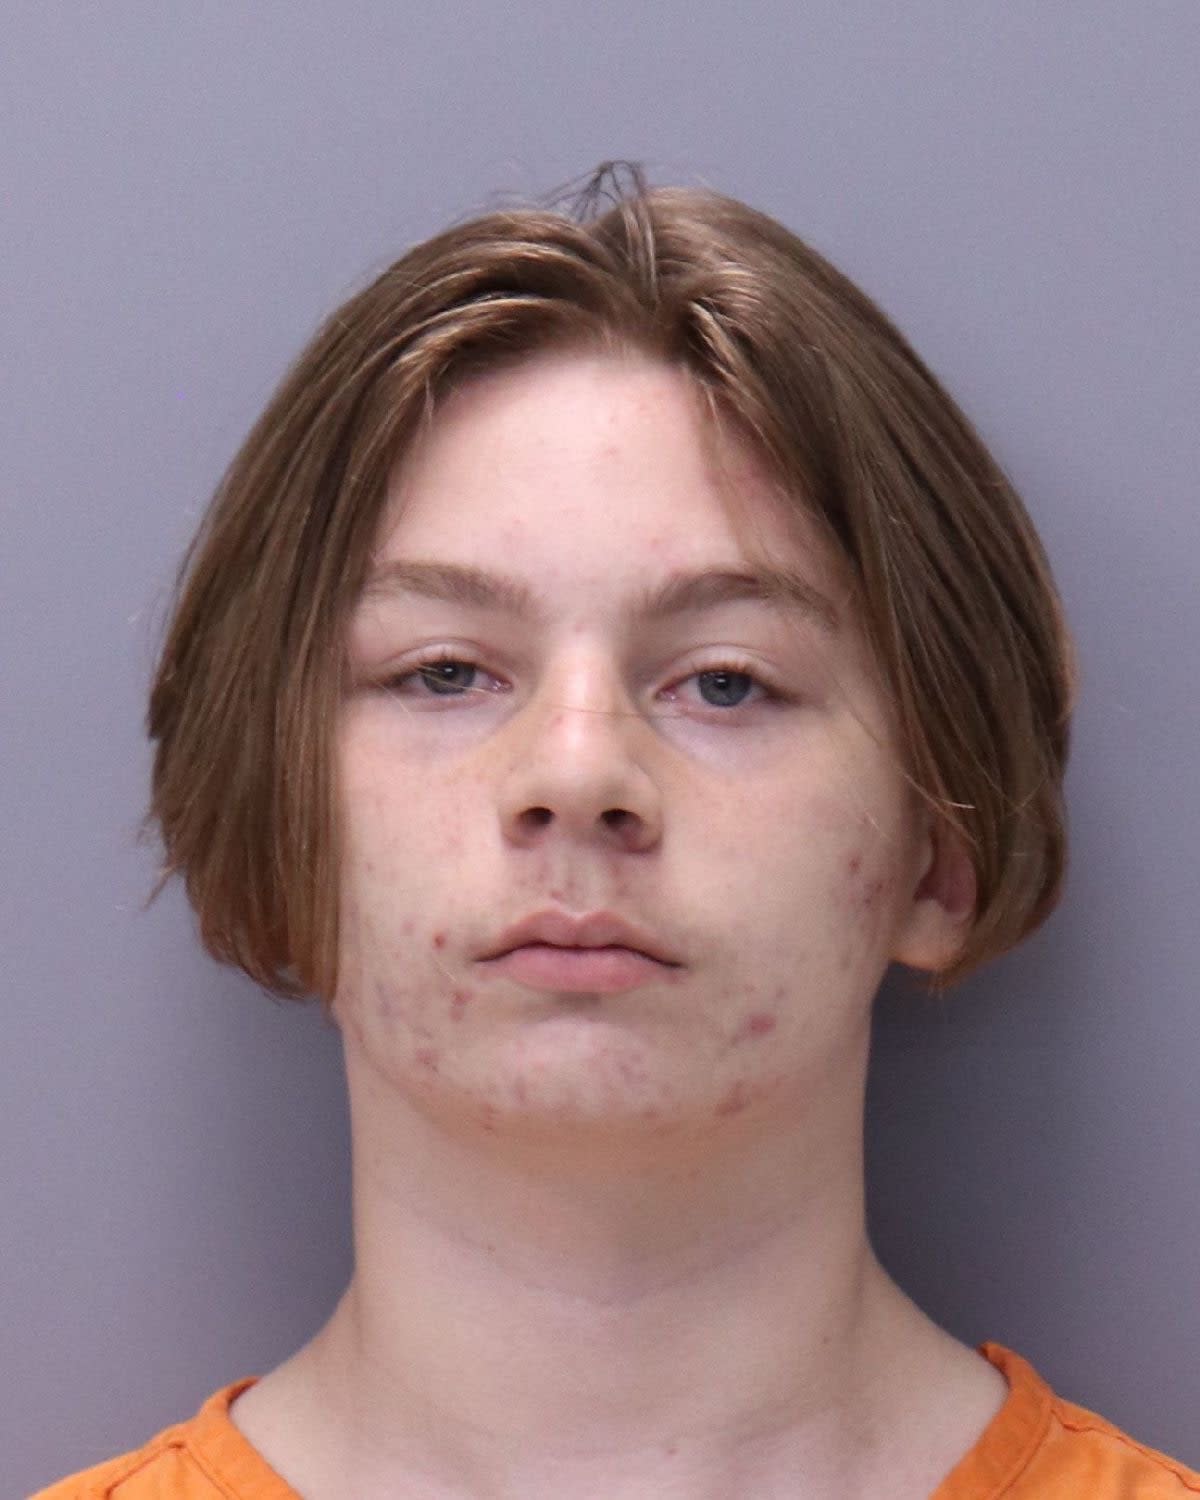 La policía arrestó a Aiden Fucci, de 14 años, quien ha sido acusado del asesinato de Tristyn Bailey, de 13 años. (St Johns County Sheriff’s Office)